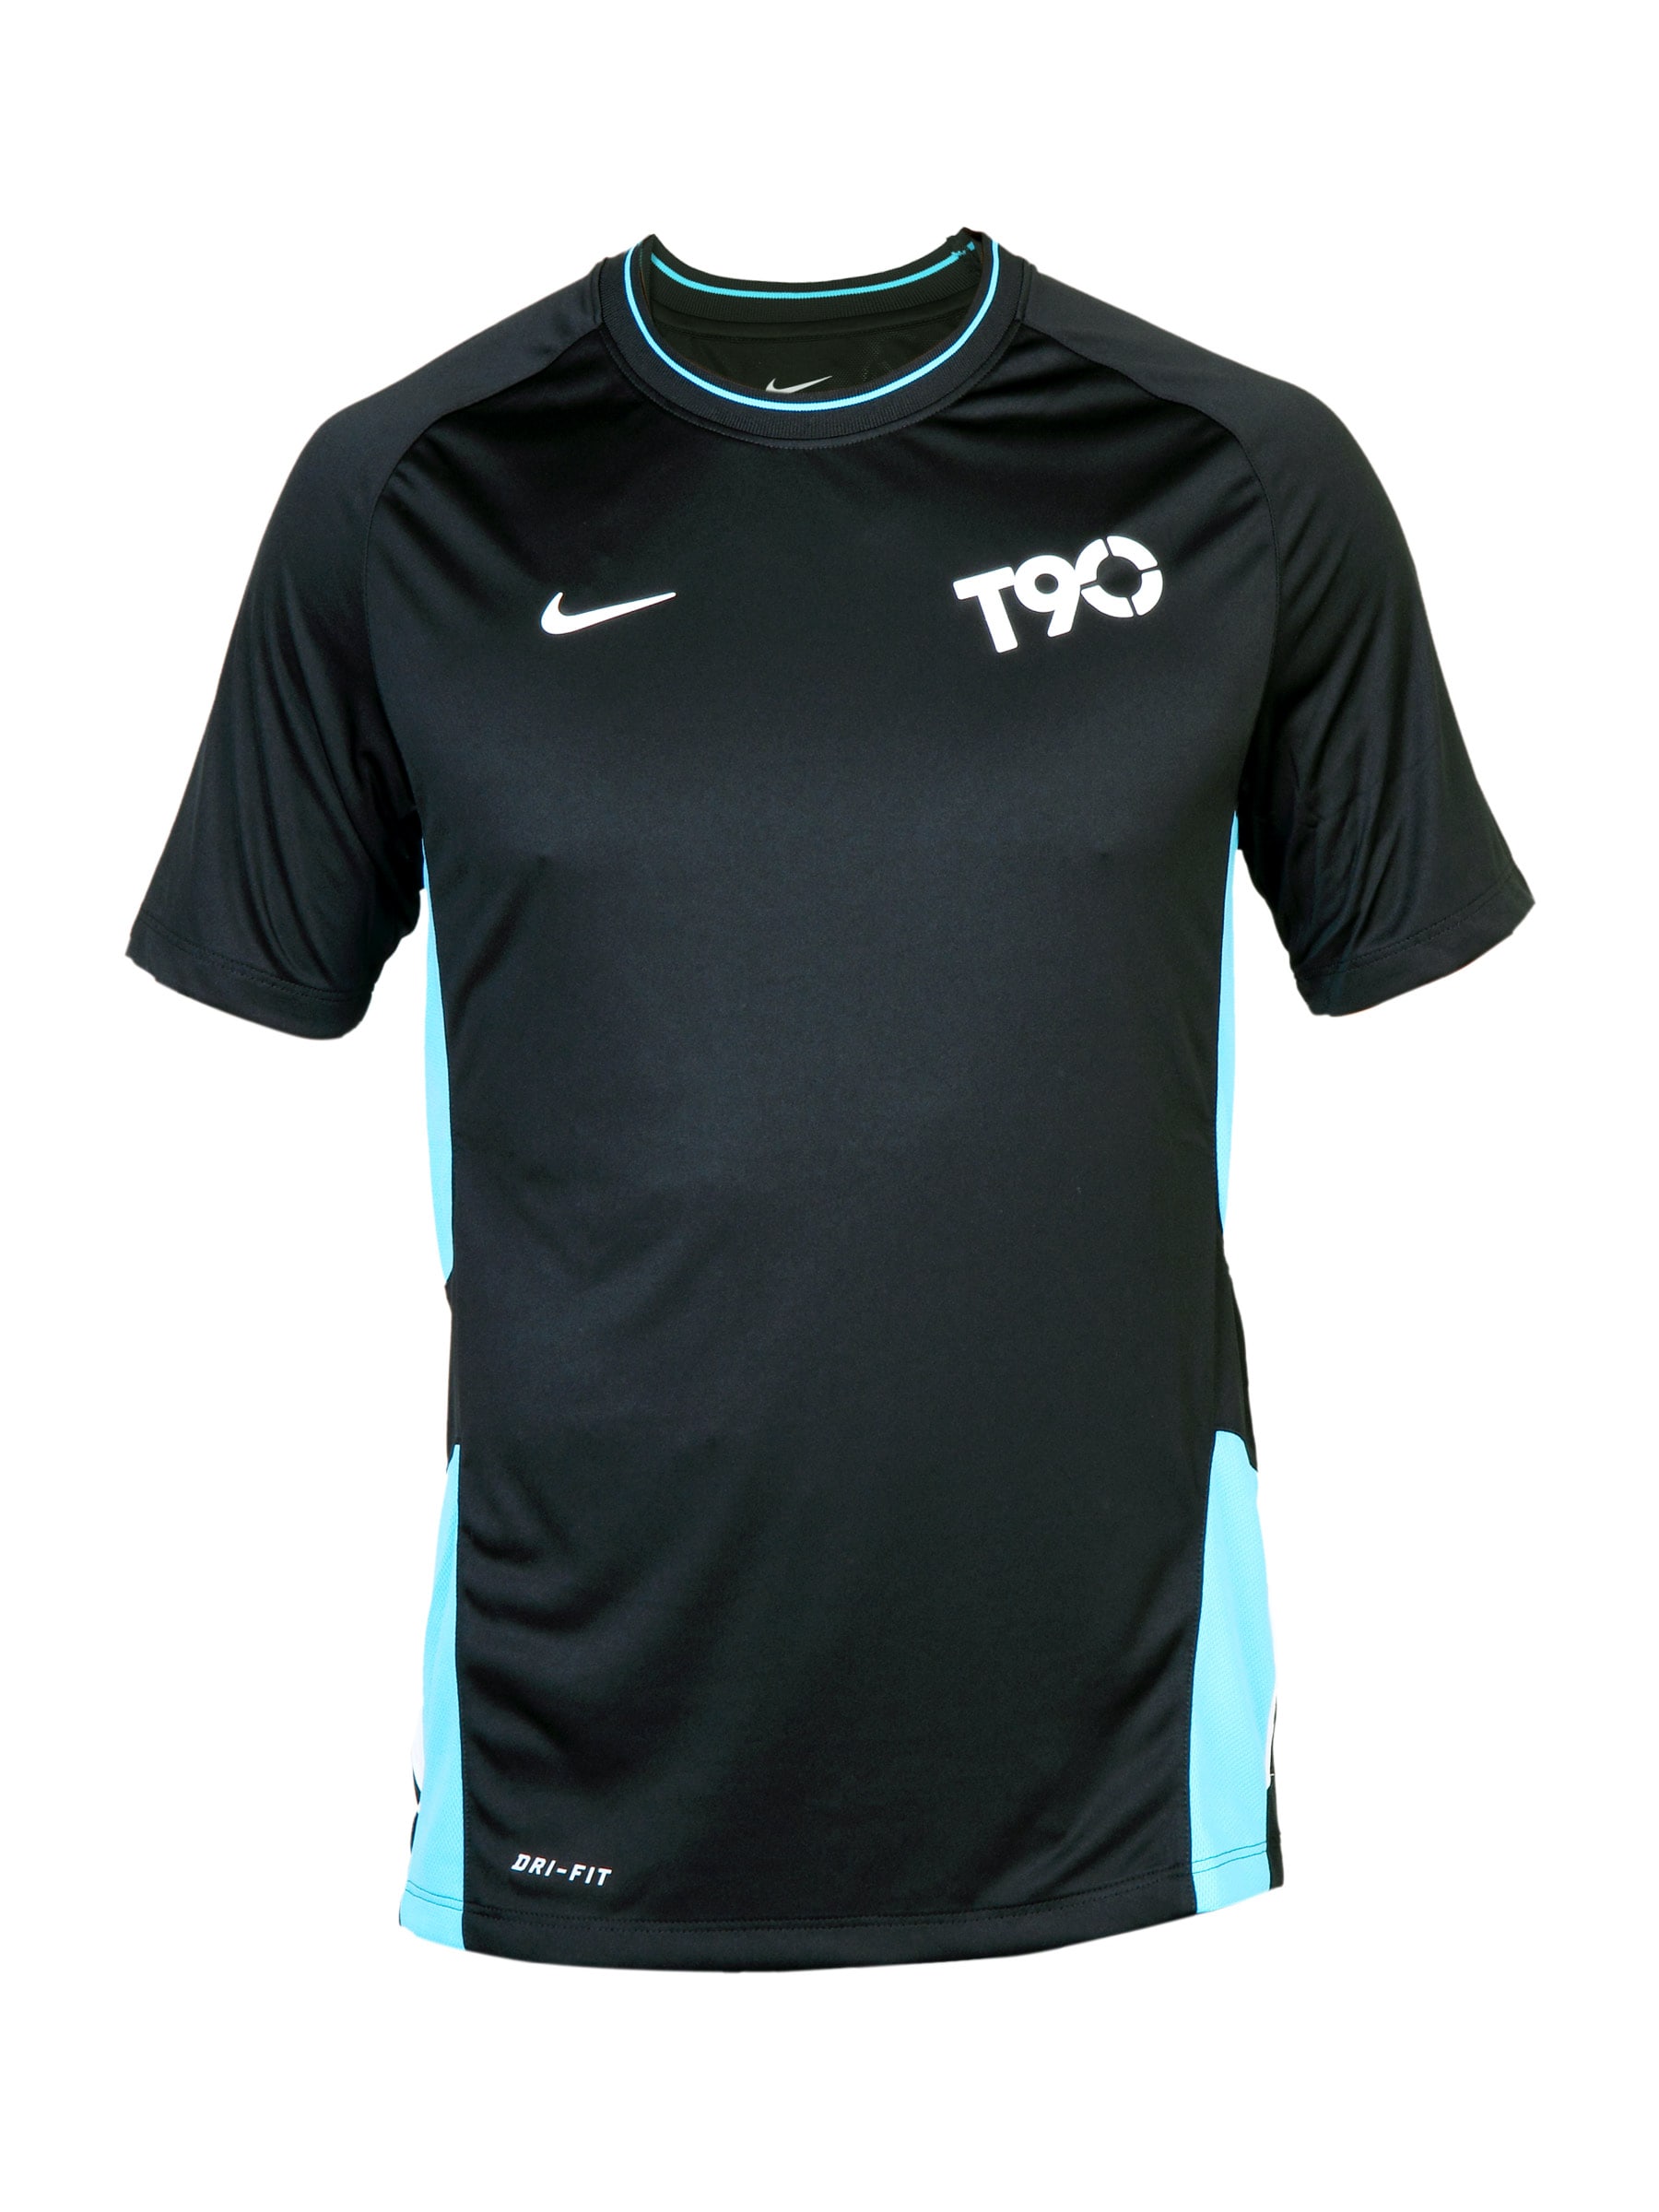 Nike Men's As T90 Ss Top T-Shirt